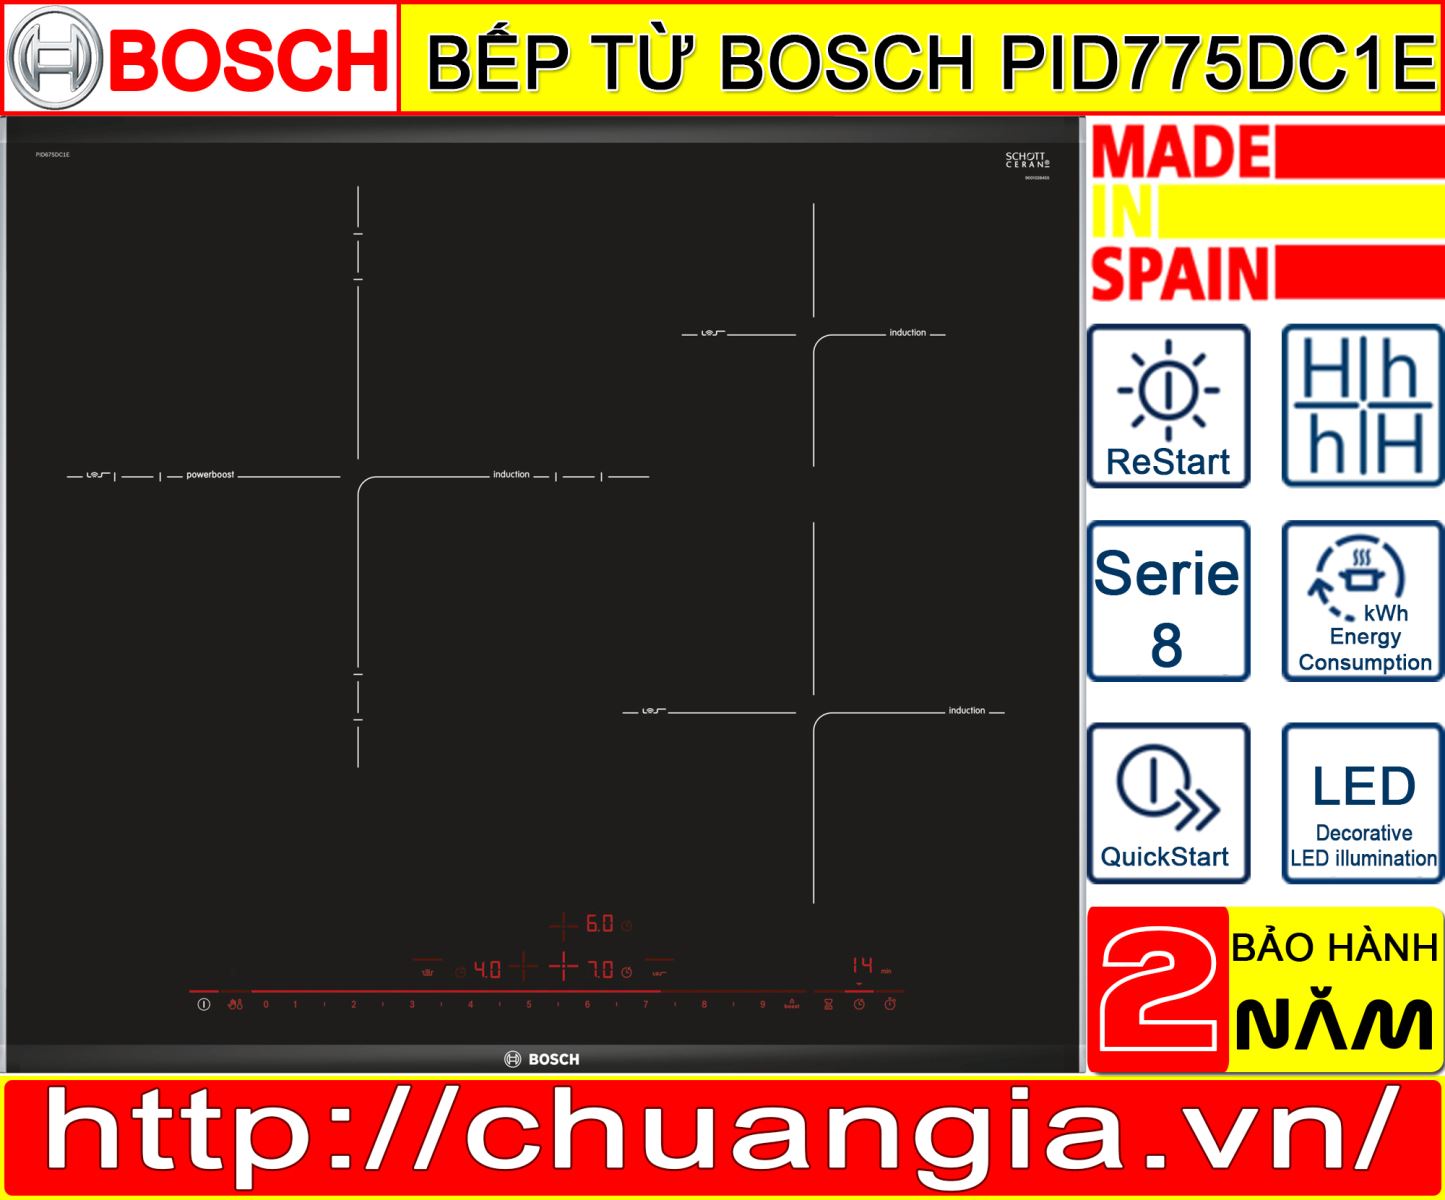 Bếp Từ Bosch PID775DC1E, bếp chuẩn giá, hướng dẫn sử dụng bếp từ bosch pid775dc1e, bếp từ bosch pid675dc1e, bếp từ bosch pij651fc1e, bếp từ bosch pij675fc1e, bếp từ dương bosch, bếp từ bosch serie 6, bếp từ bosch pie875dc1e, bếp từ bosch serie 8